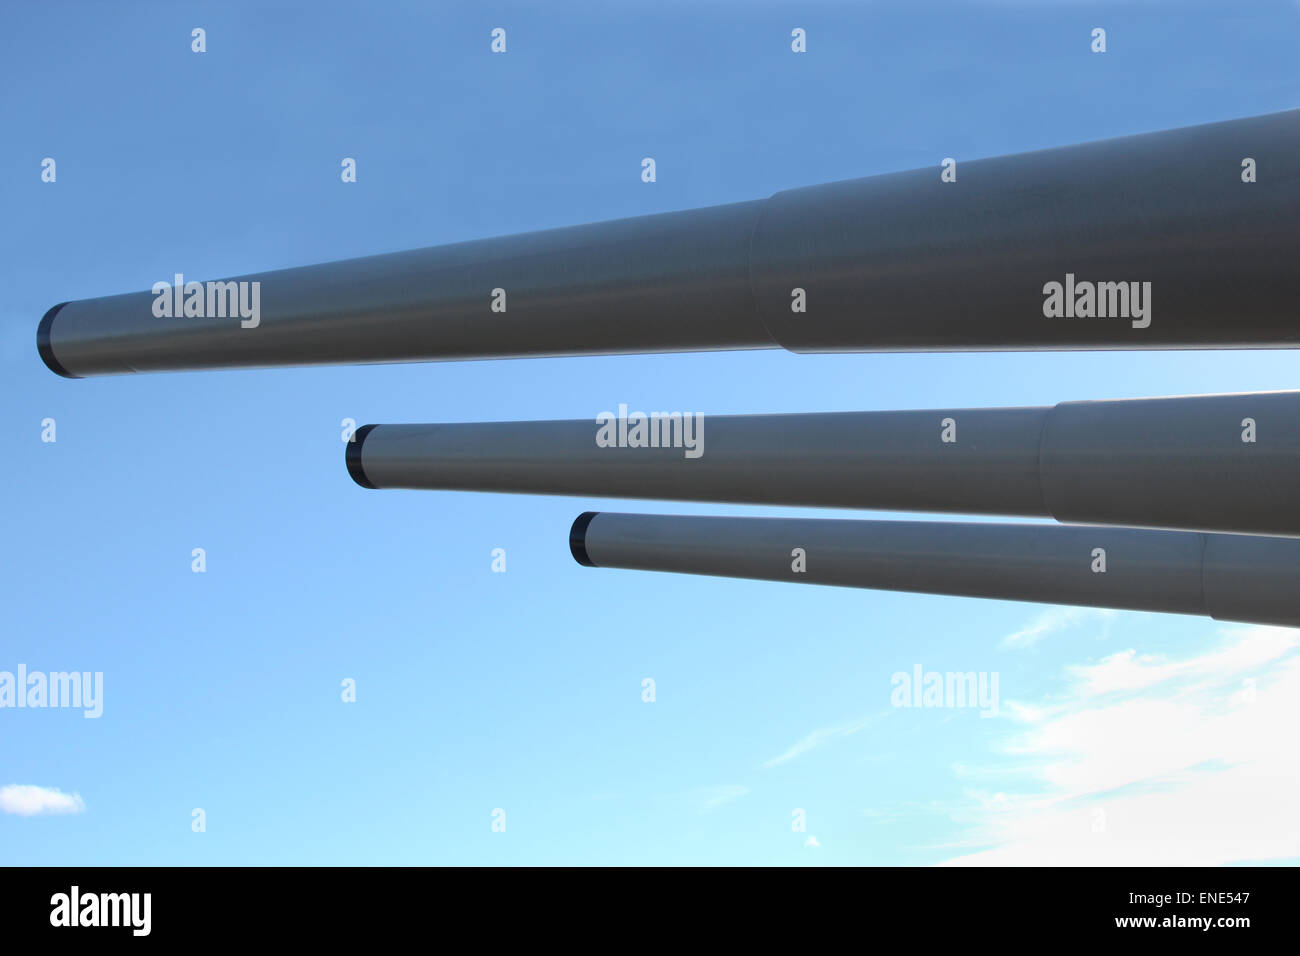 Tres cañones de 16 pulgadas similar a la utilizada por los buques de guerra de la Marina estadounidense en la Segunda Guerra Mundial y en Corea. Foto de stock